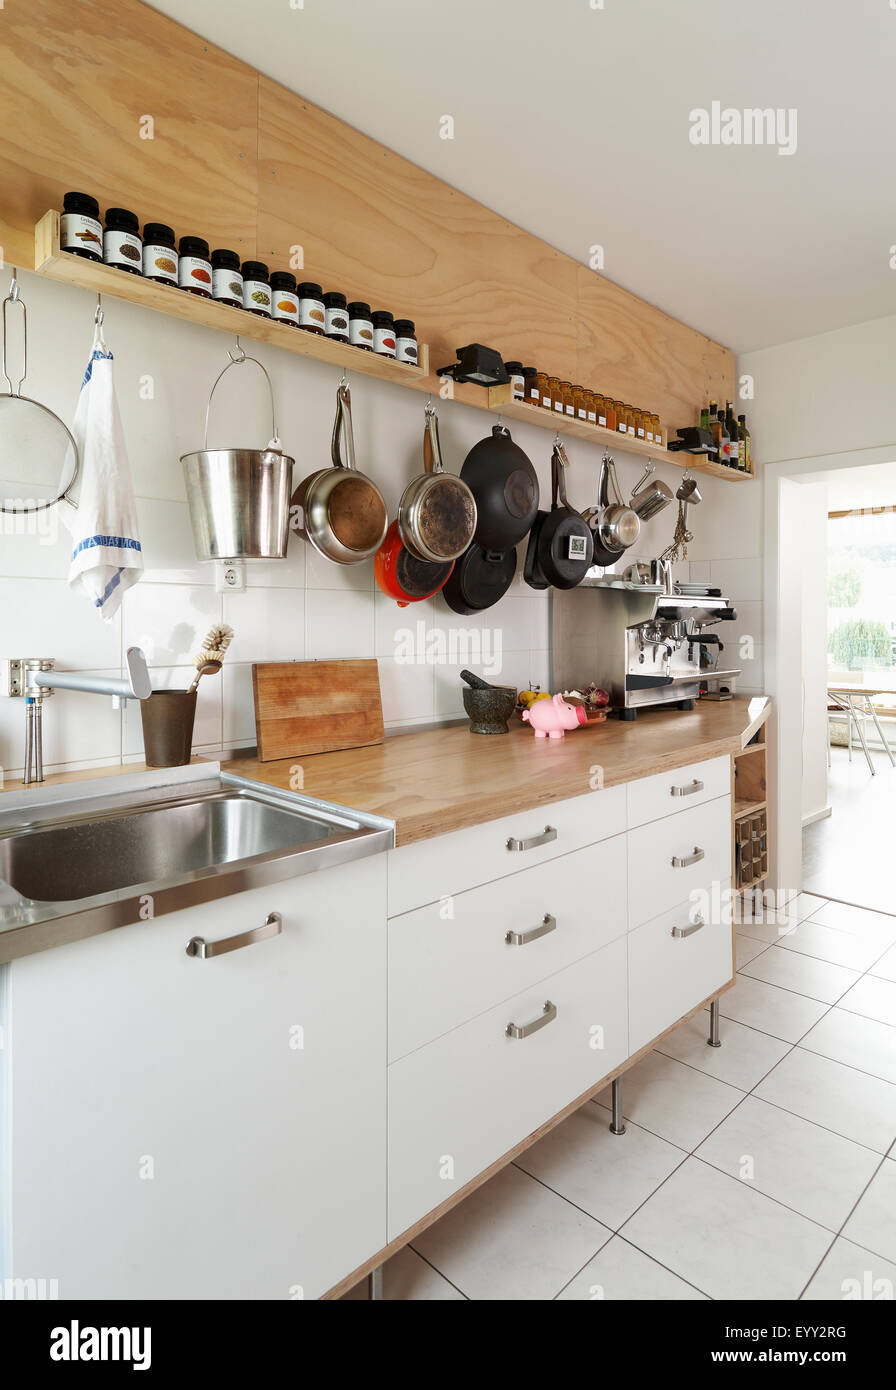 Gegenraum und Kochutensilien in modernen Küche Stockfoto